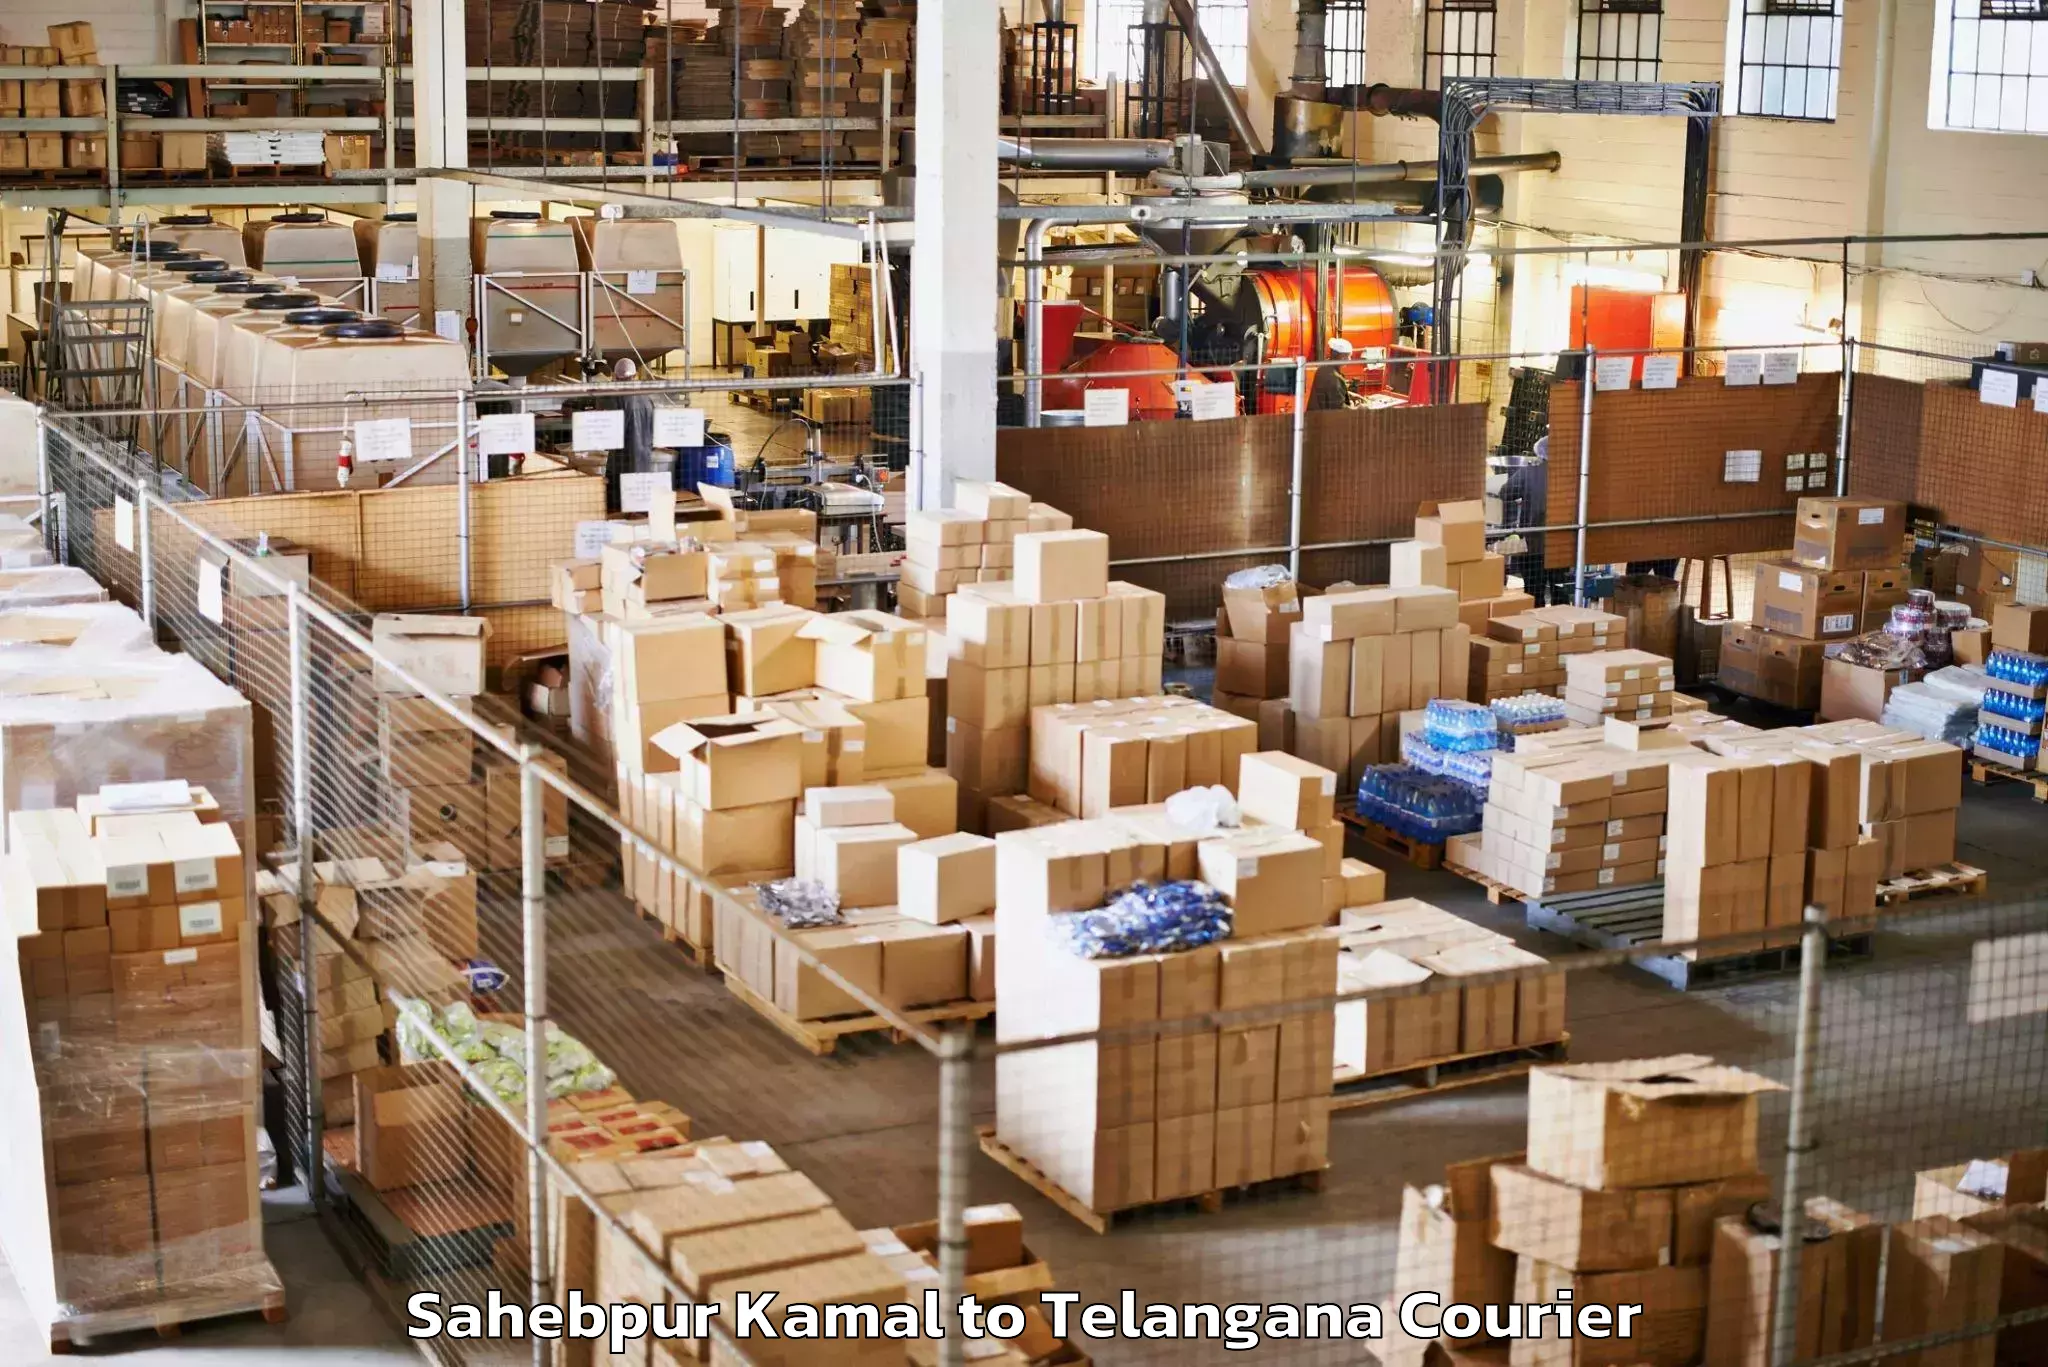 Luggage shipping logistics in Sahebpur Kamal to Warangal